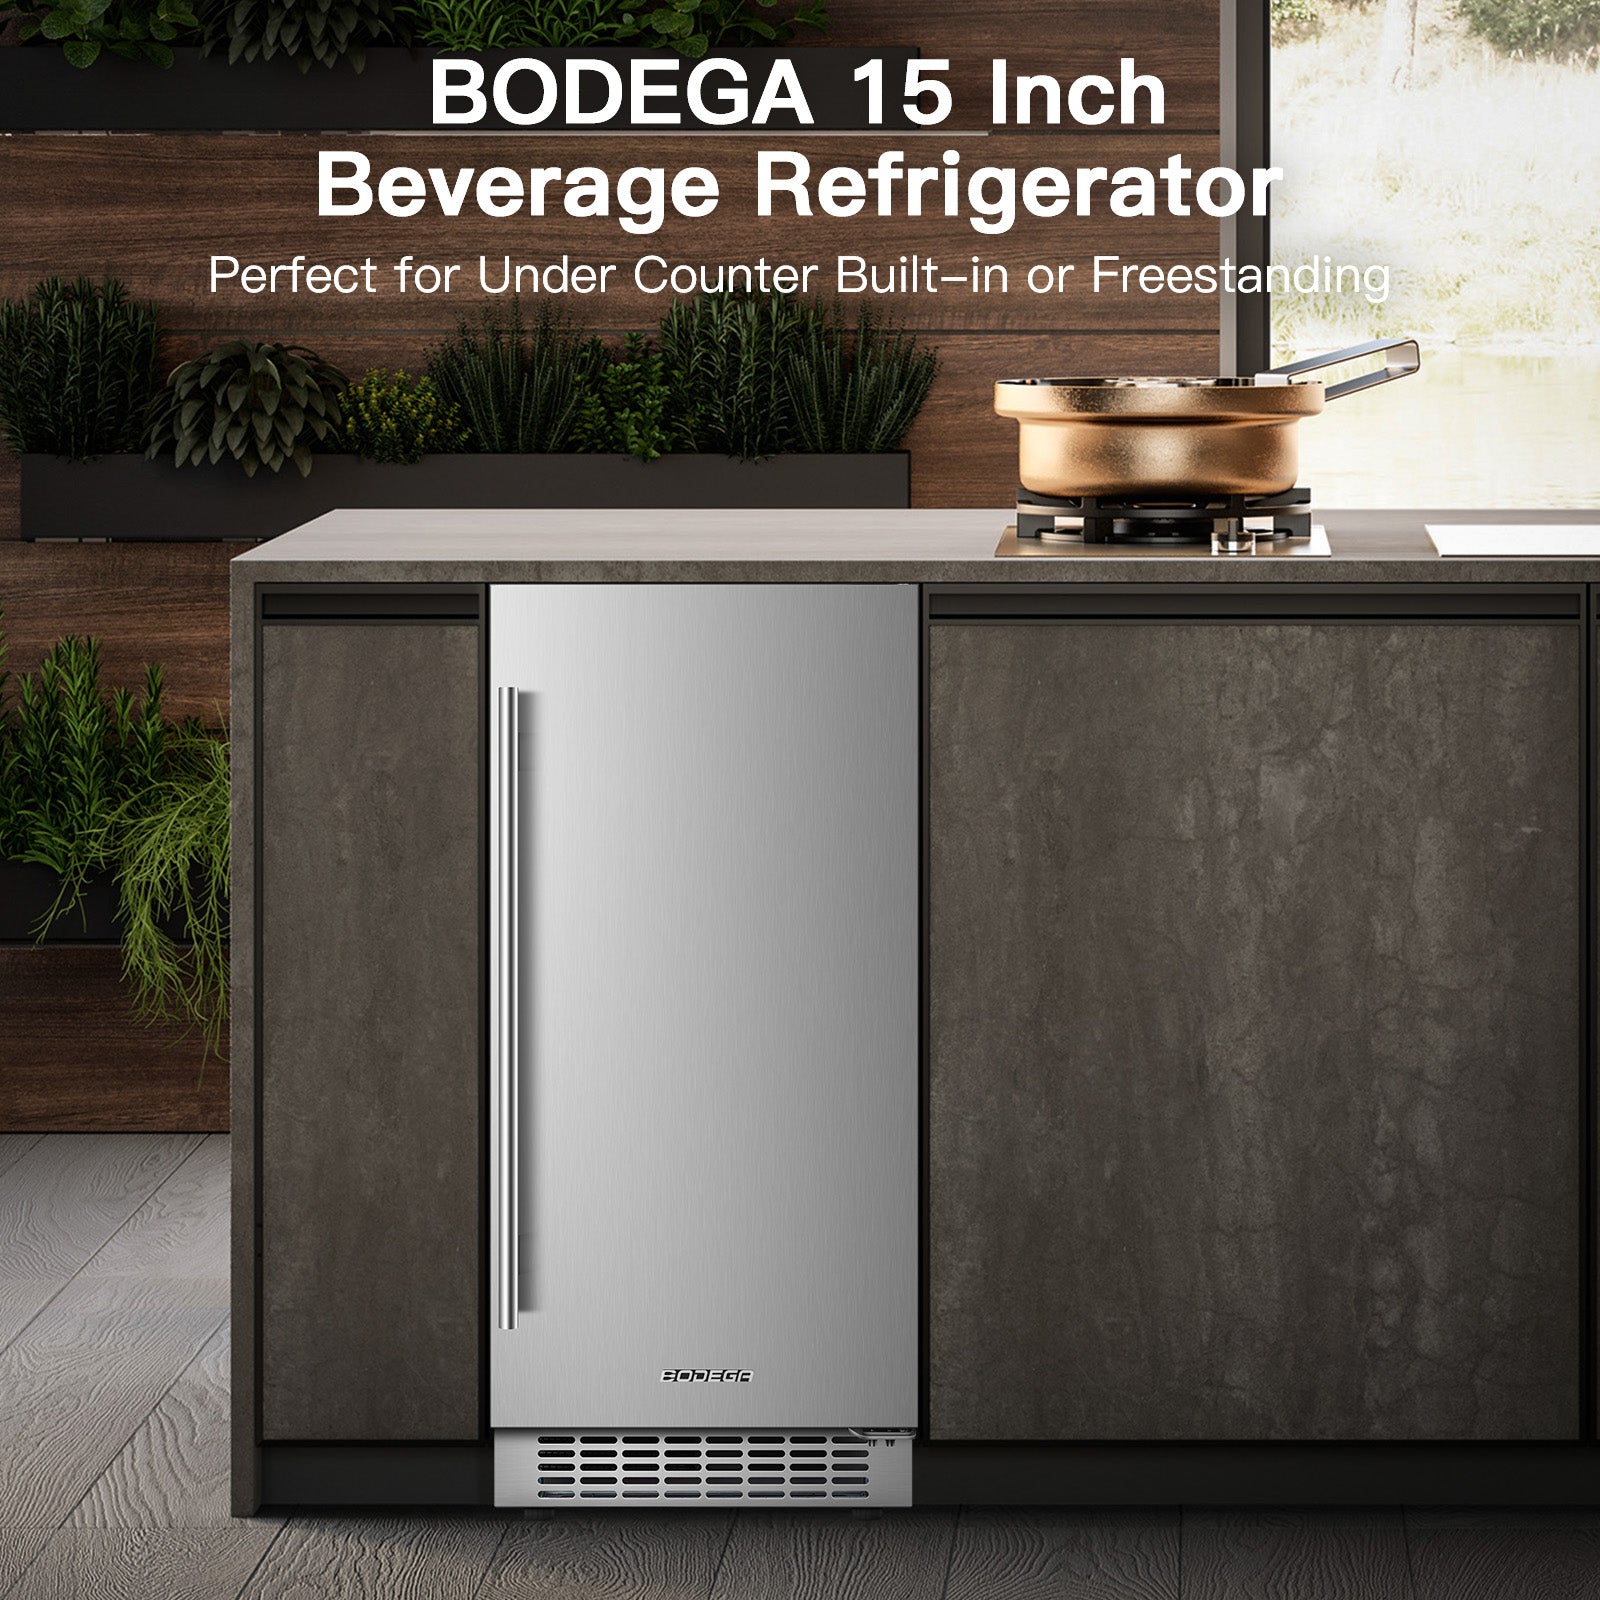 https://www.bodegacooler.com/cdn/shop/products/BODEGABeverageCooler15Inch_Built-inandFreestandingBeverageRefrigerator100Cans3.jpg?v=1634786368